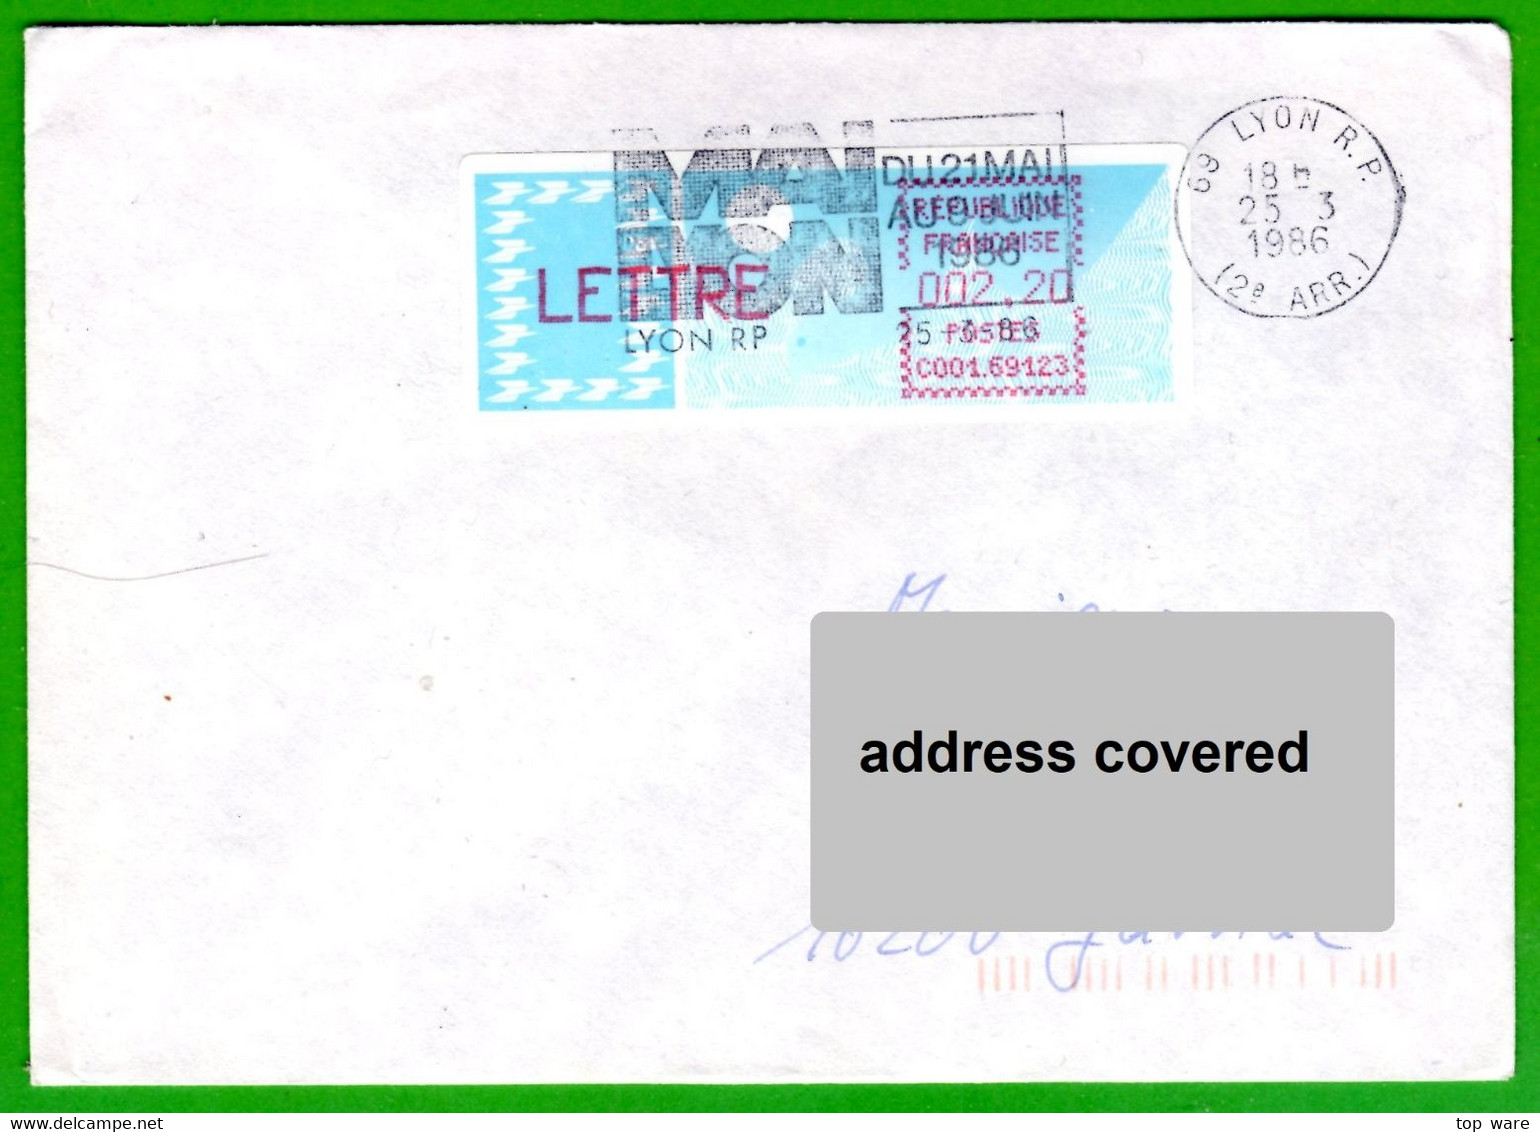 France LSA ATM Stamps C001.69123 / Michel 6.4 Zd / LETTRE 2,20 On Cover 25.3.86 Lyon RP / Distributeurs Automatenmarken - 1985 « Carrier » Papier